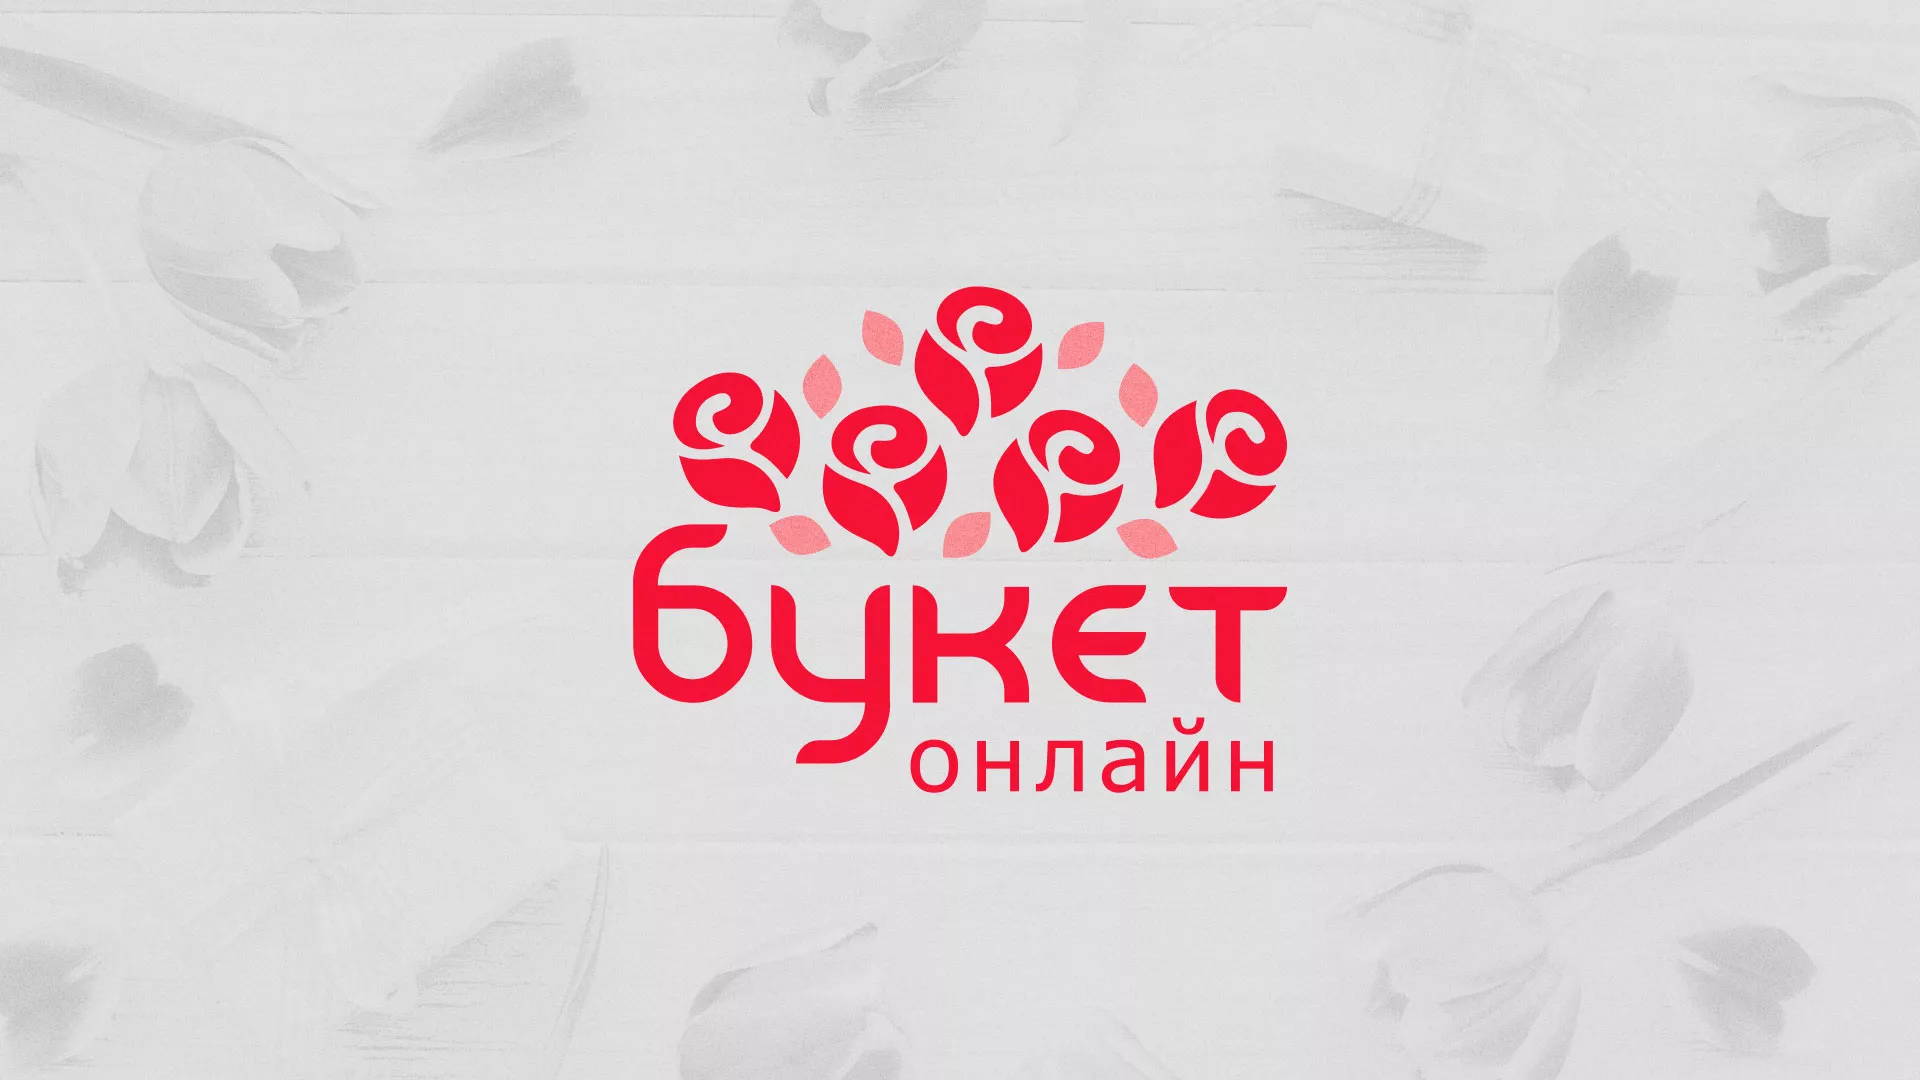 Создание интернет-магазина «Букет-онлайн» по цветам в Старой Руссе